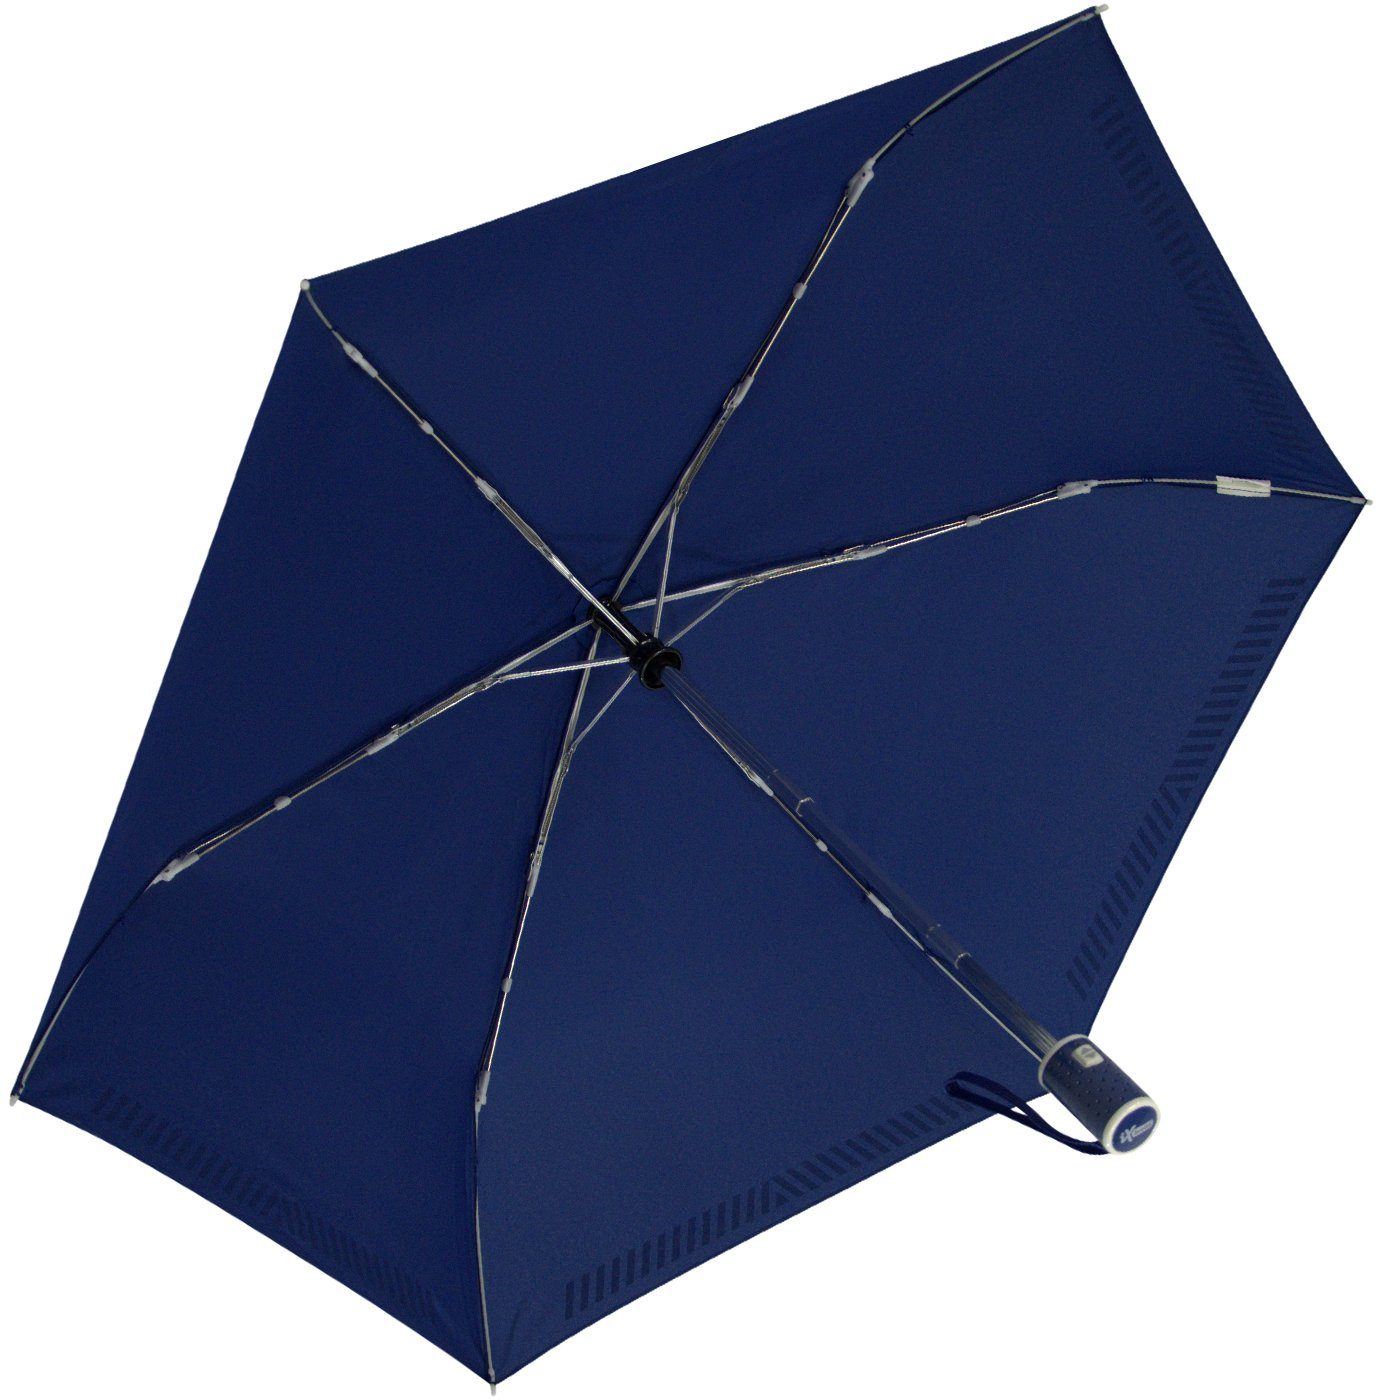 iX-brella Taschenregenschirm Kinderschirm mit Auf-Zu-Automatik, Reflex-Streifen blau durch Sicherheit - reflektierend